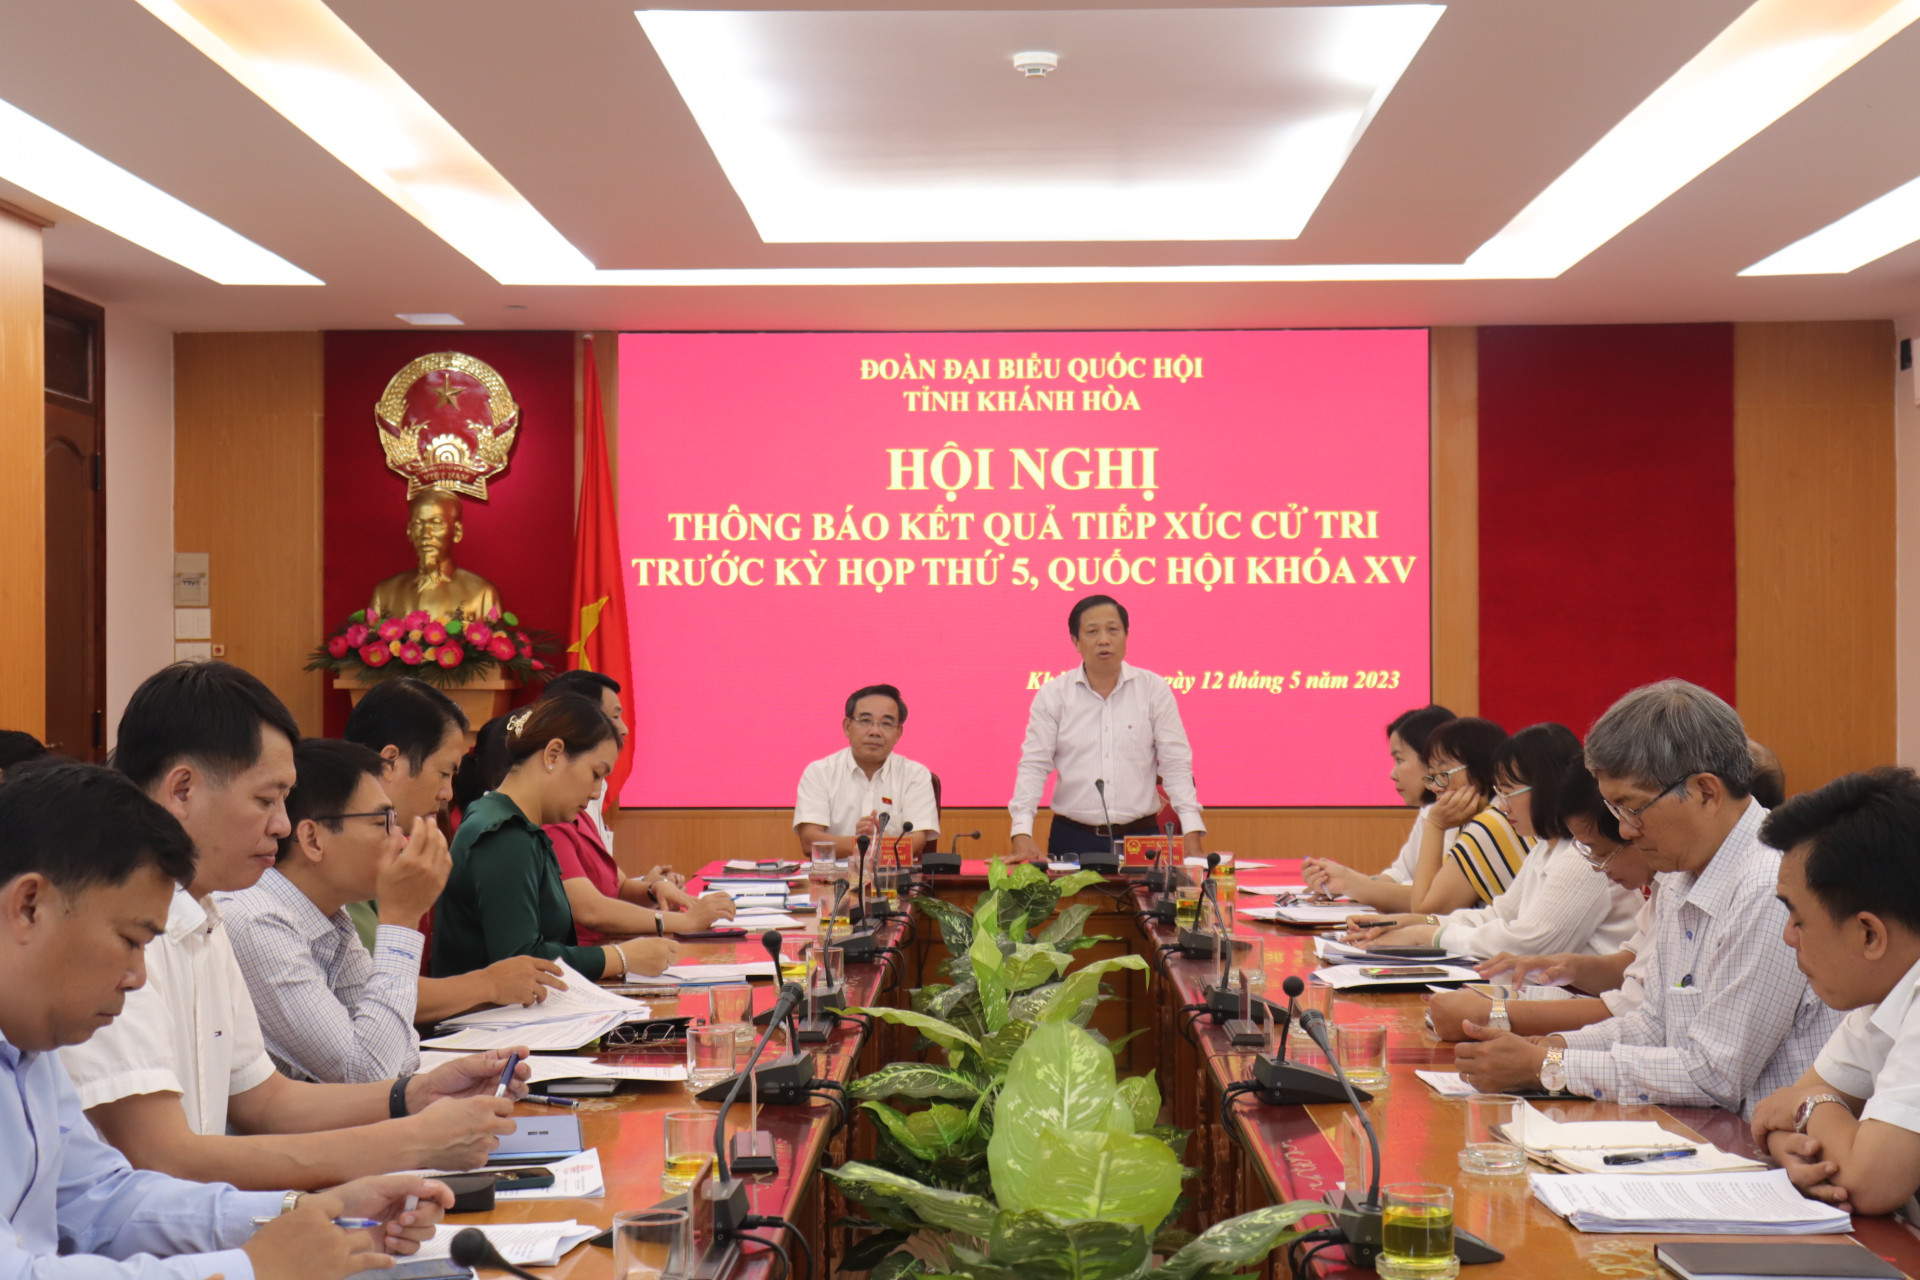 Ông Hà Quốc Trị - Phó Bí thư Tỉnh ủy, Trưởng Đoàn đại biểu Quốc hội (ĐBQH) tỉnh Khánh Hòa phát biểu kết luận tại hội nghị.